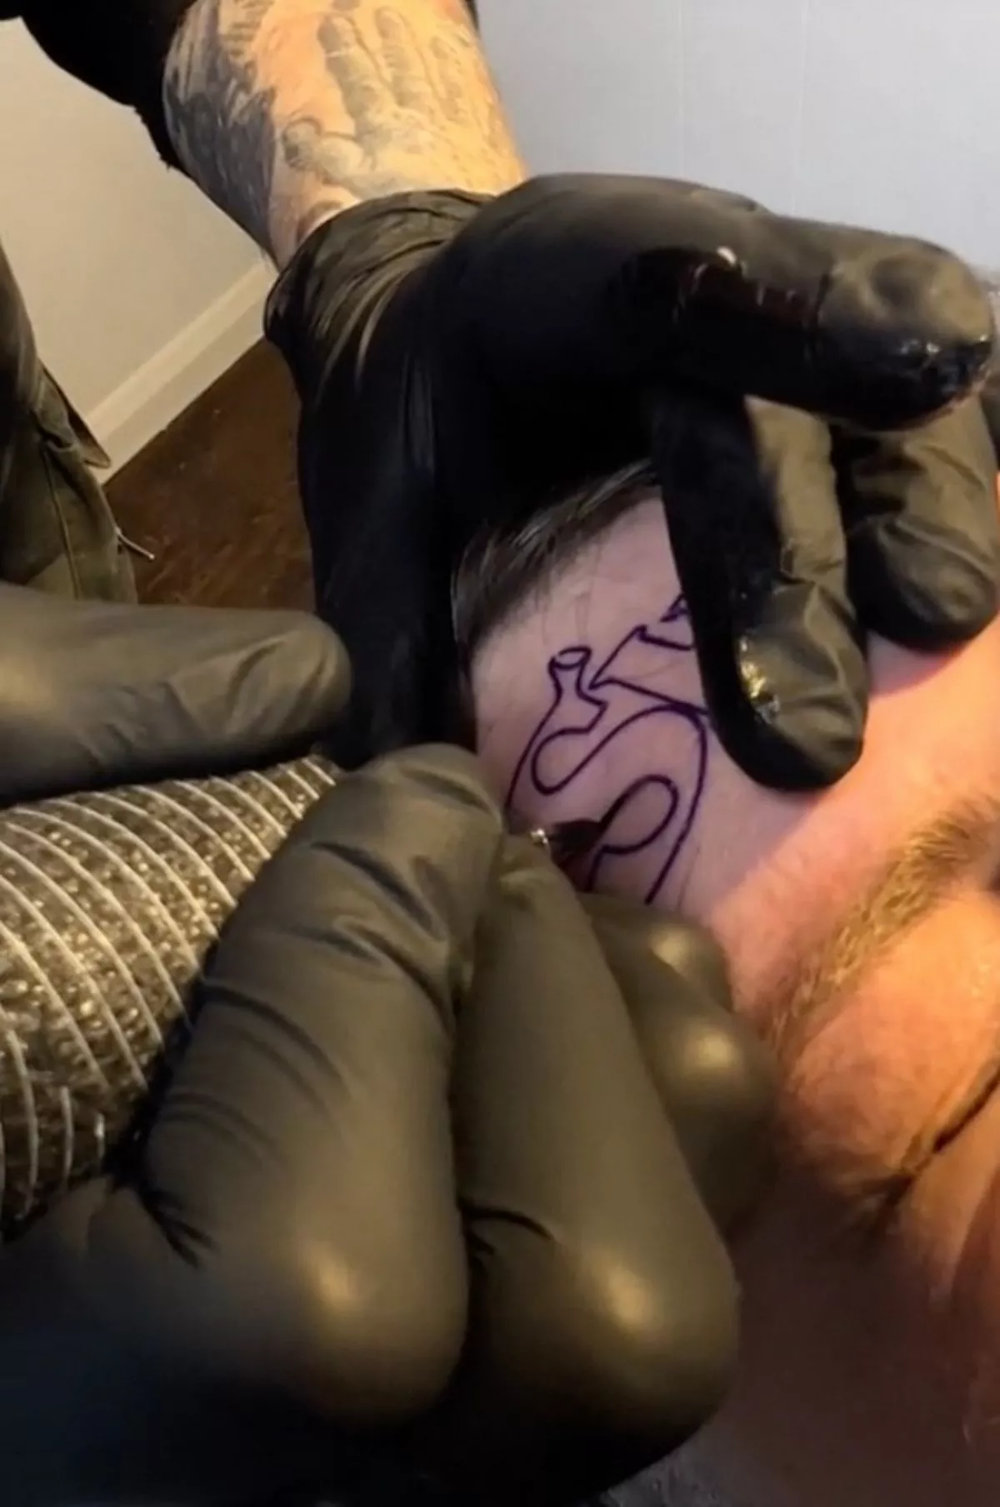 Настоящий киноман: парень сделал татуировку «Шрэк» на лбу